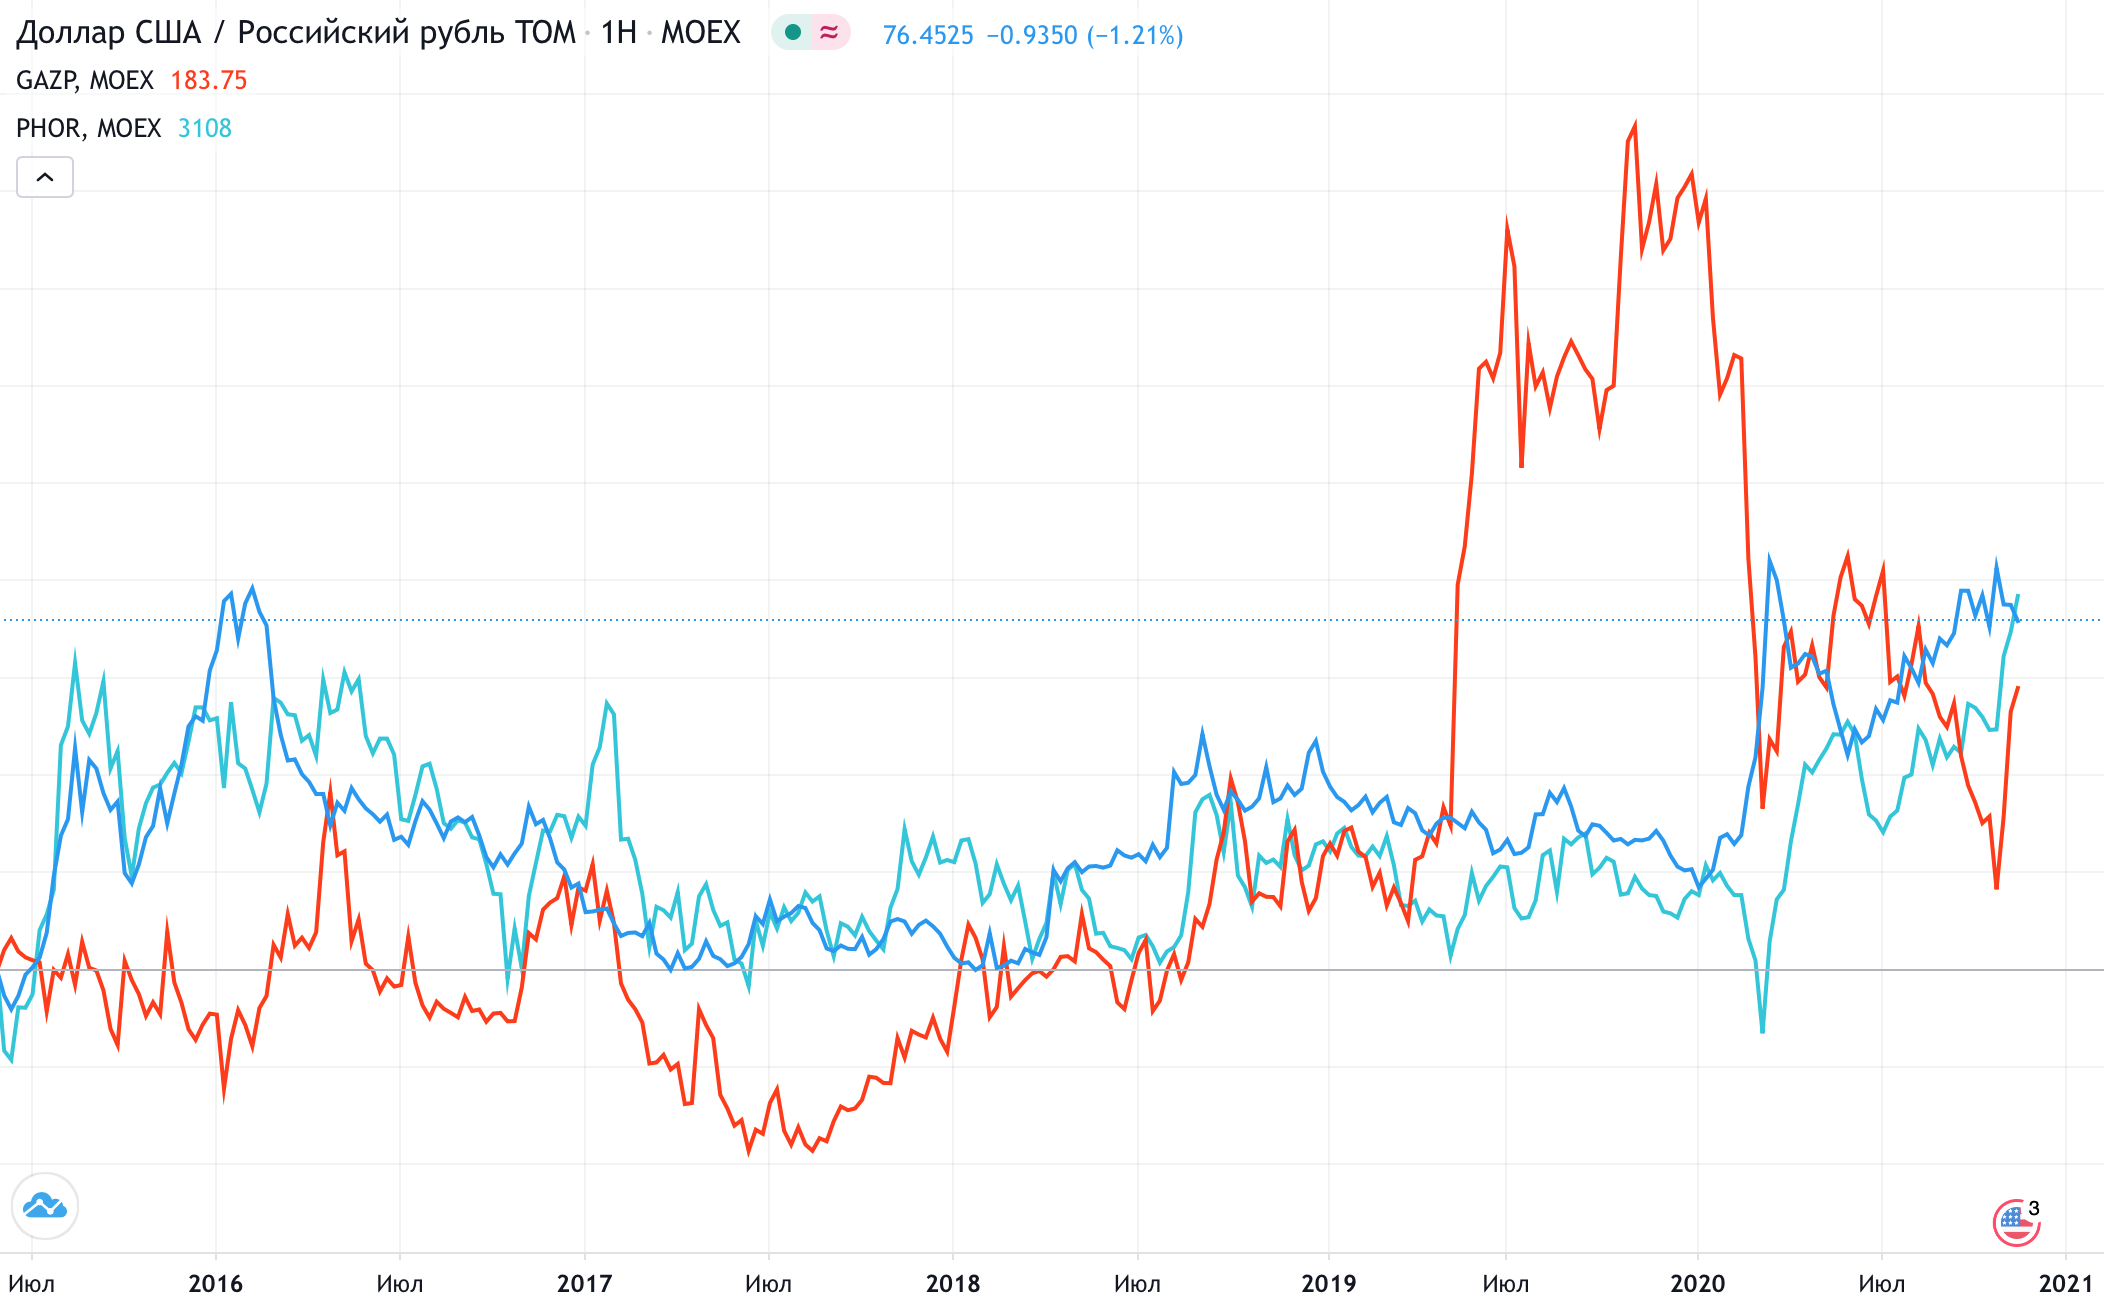 Курс доллара к рублю (синий) и колебания акций «Газпрома» (красный) и «Фосагро» (голубой). Зависимость валютных всплесков и колебаний акций компаний-экспортеров — «Газпрома» и «Фосагро»: все три инструмента реагируют на некий общий фактор, хотя четкой корреляции не наблюдается. Источник: TradingView